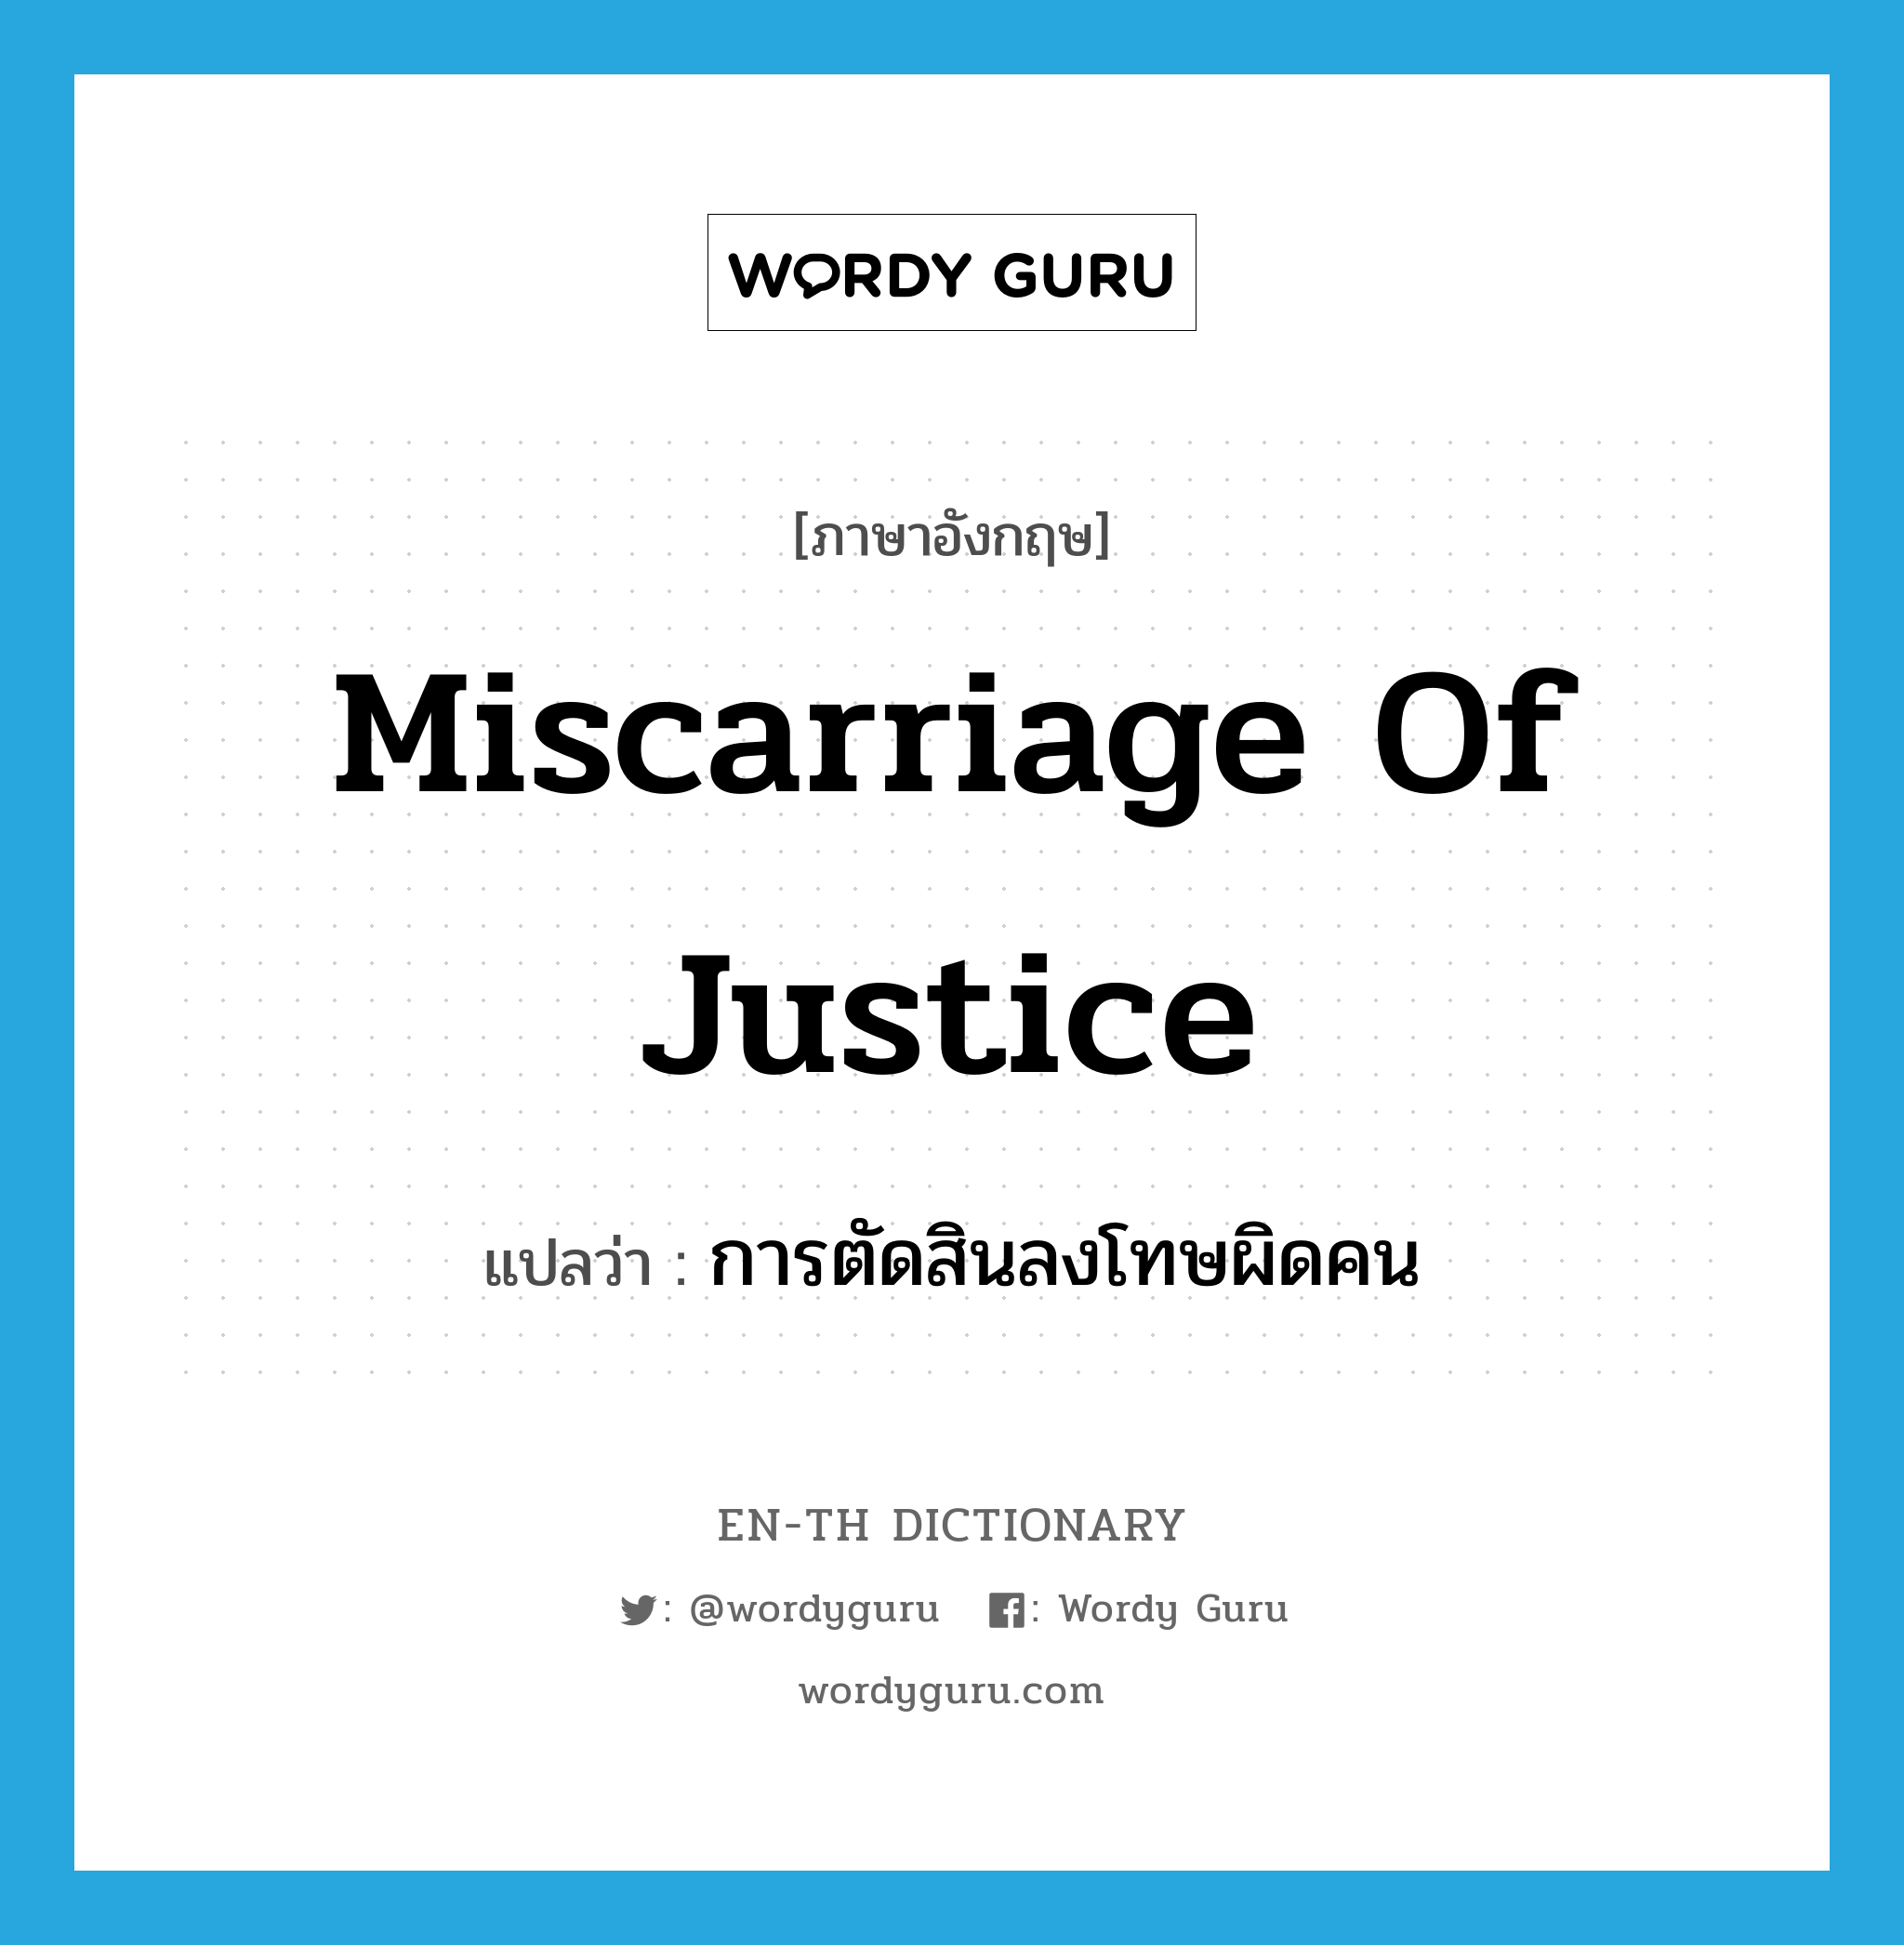 การตัดสินลงโทษผิดคน ภาษาอังกฤษ?, คำศัพท์ภาษาอังกฤษ การตัดสินลงโทษผิดคน แปลว่า miscarriage of justice ประเภท N หมวด N